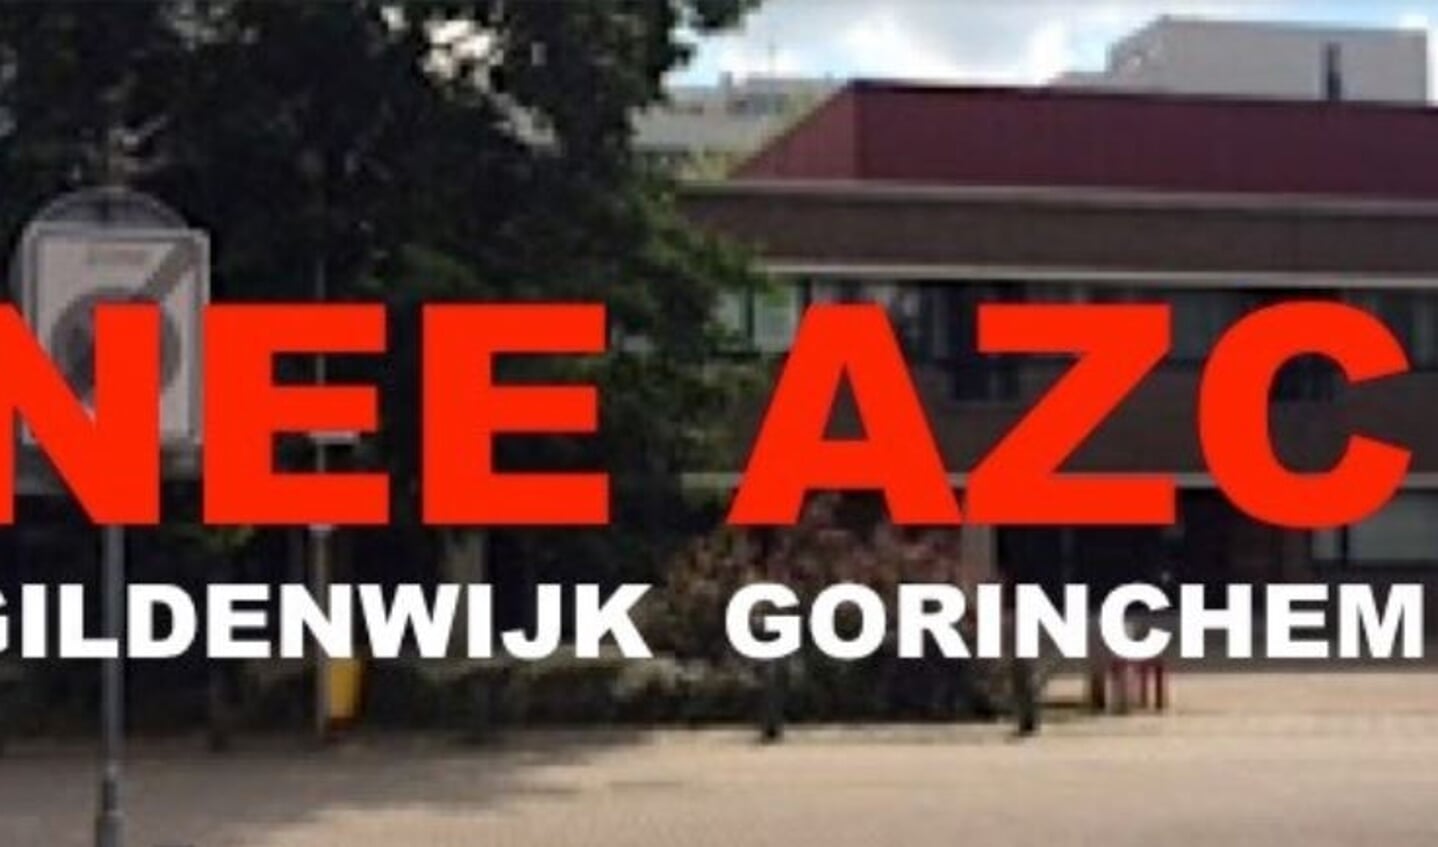 Beeld van de Facebook pagina van protesten tegen de komst van een AZC